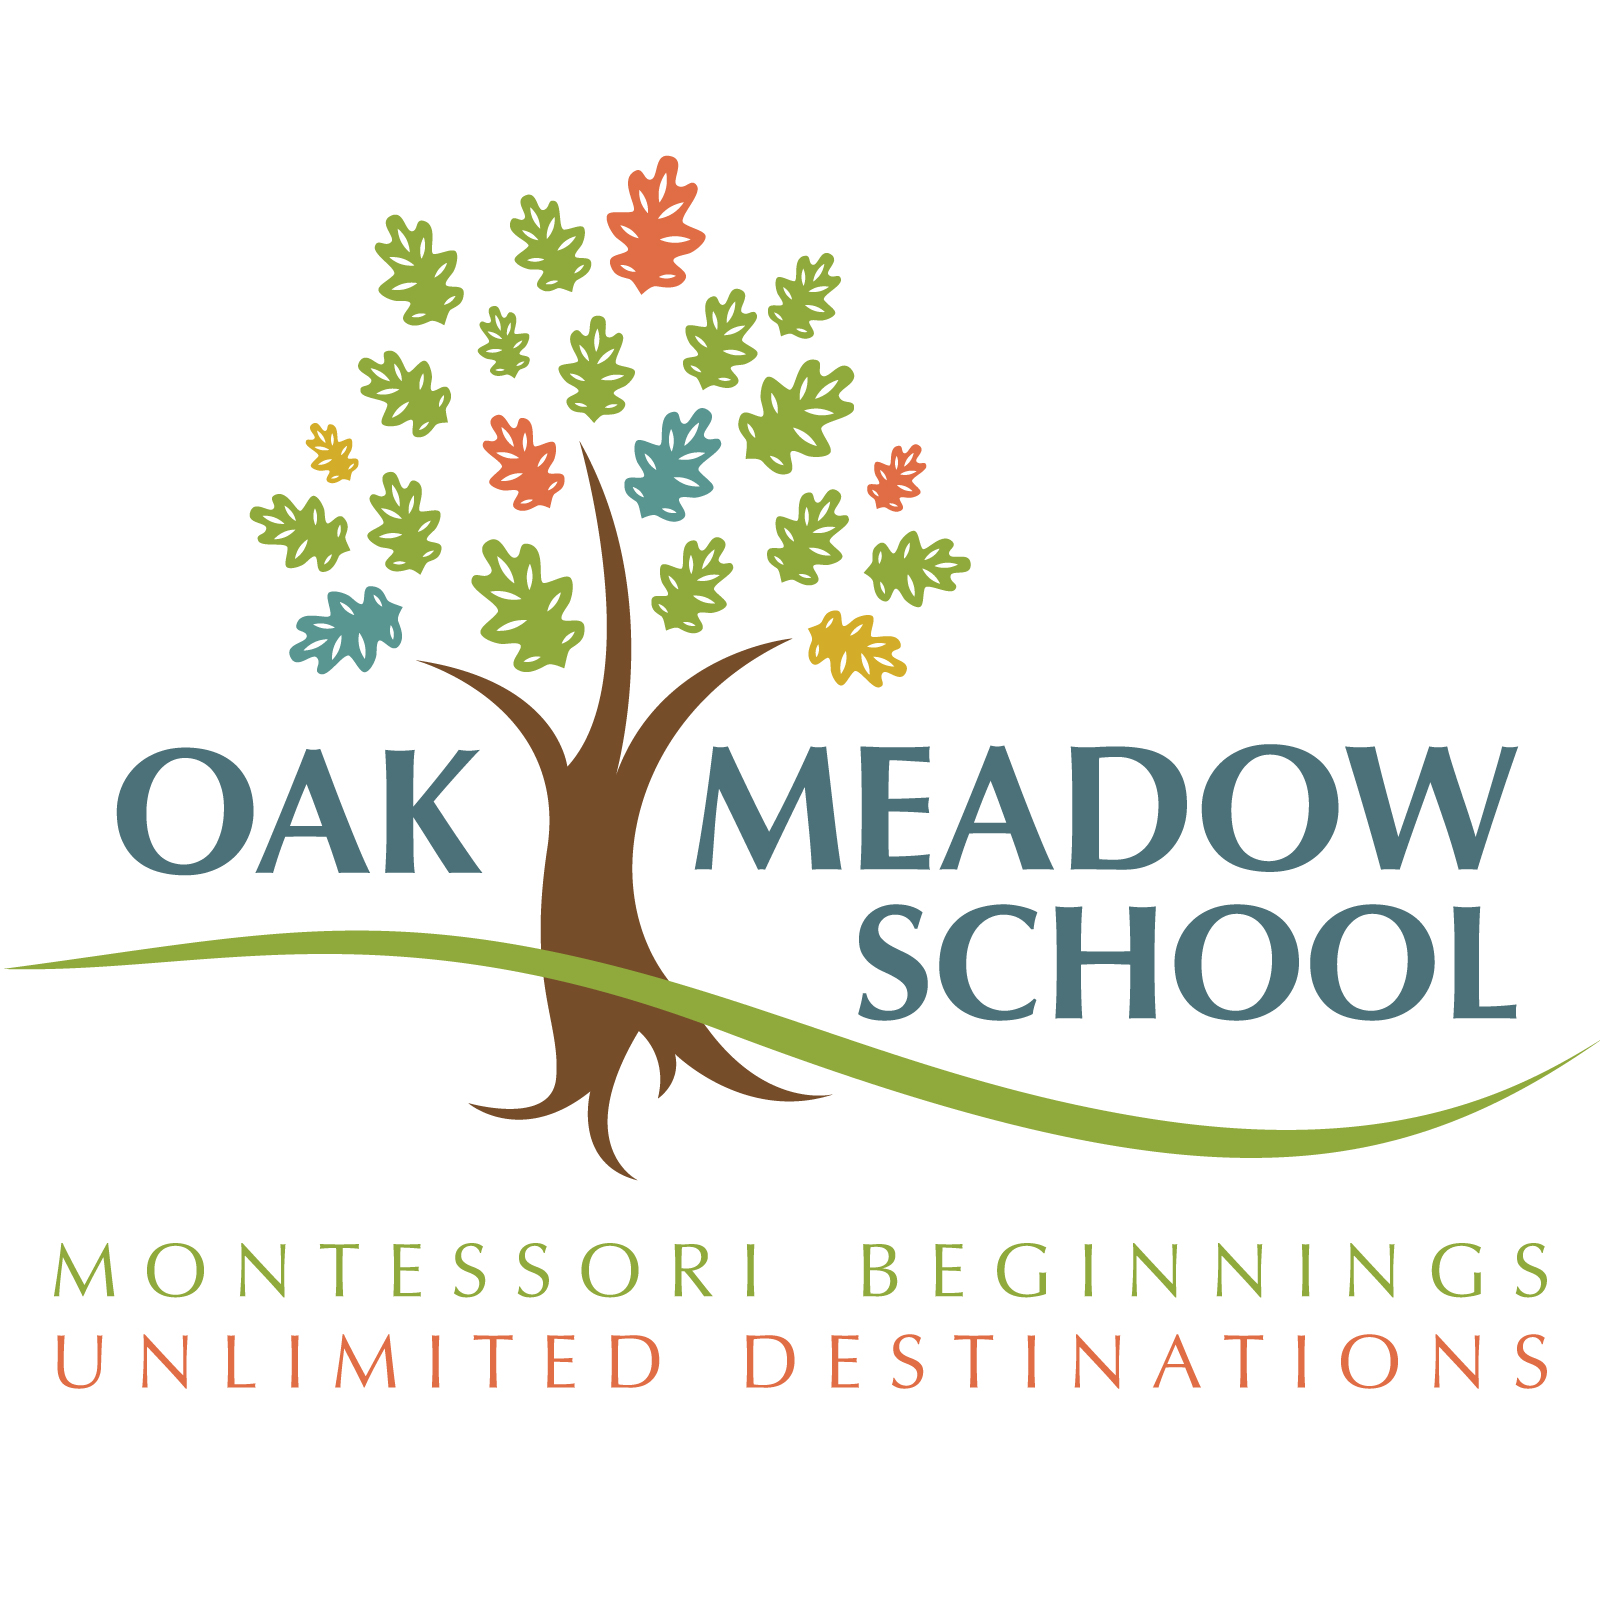 Oak Meadow School logo